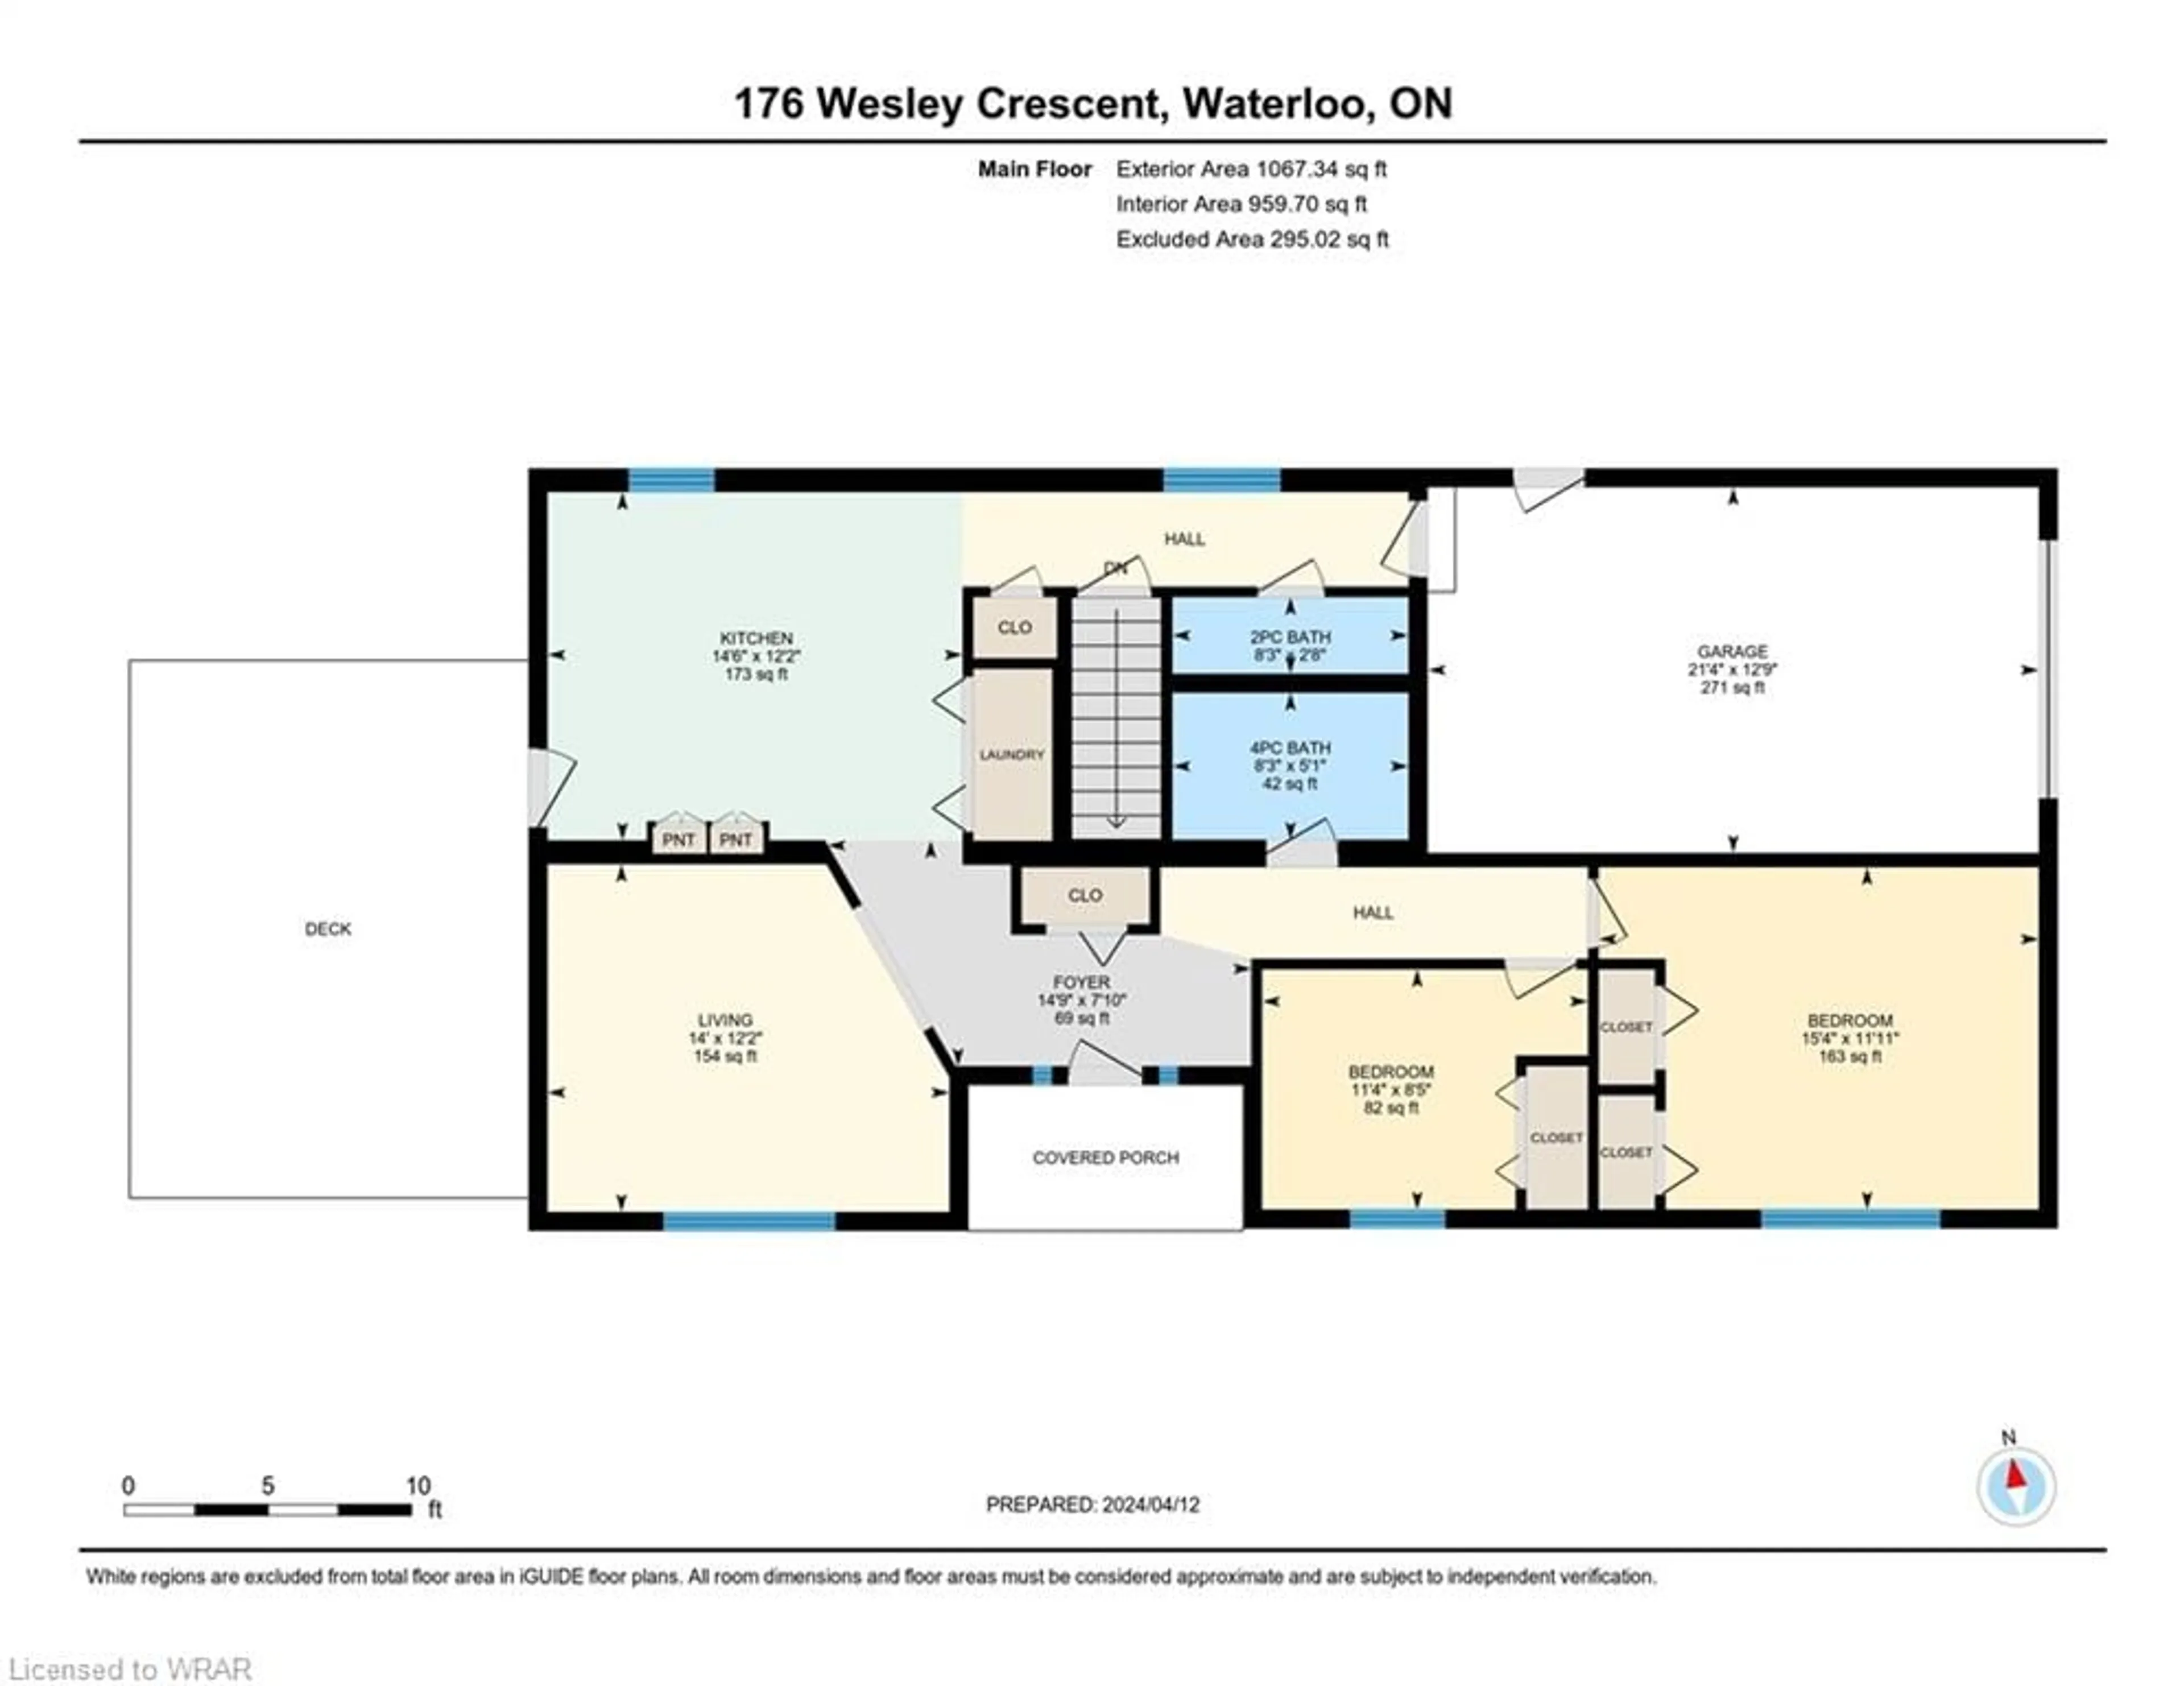 Floor plan for 176 Wesley Cres, Waterloo Ontario N2J 4G8